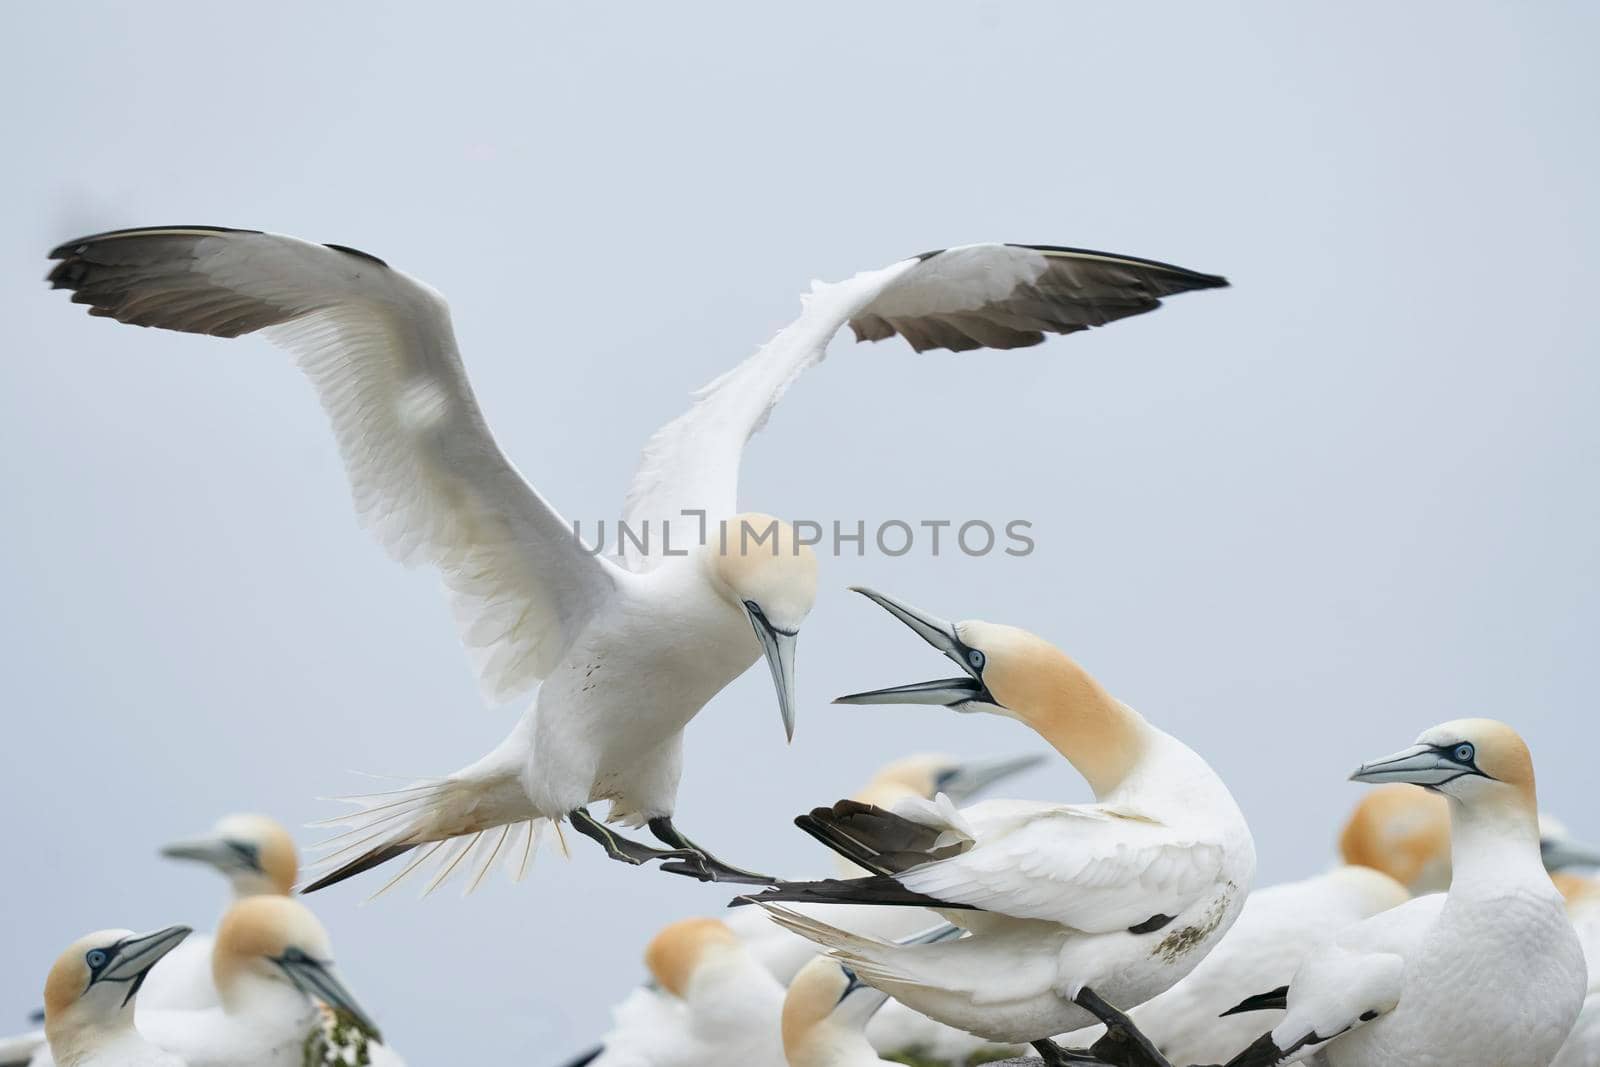 Gannets squabbling by JeremyRichards